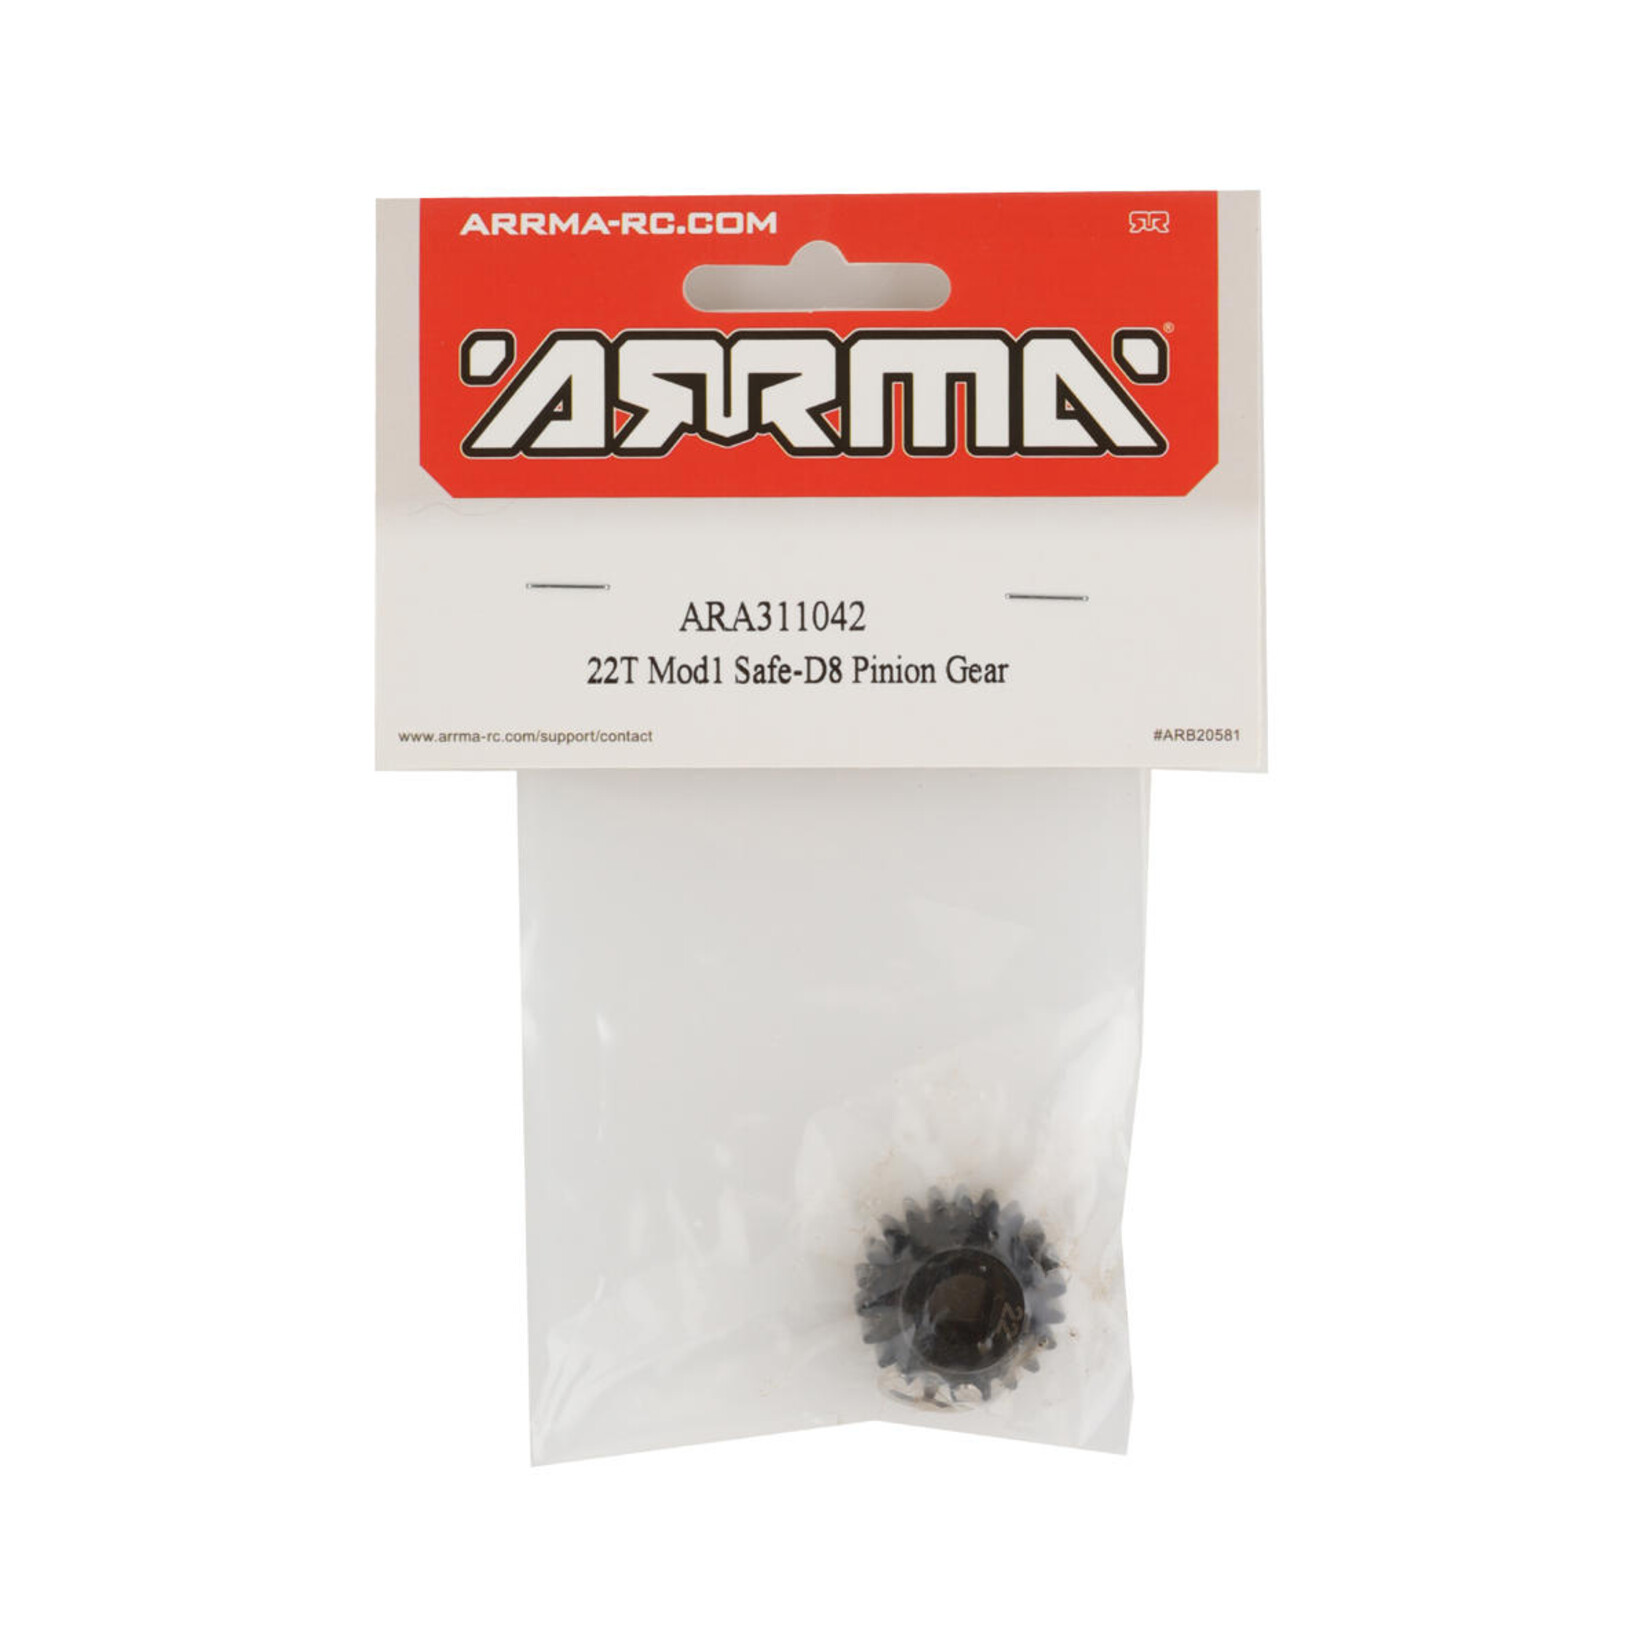 ARRMA Arrma Safe-D8 Mod1 Pinion Gear (22T) #ARA311042